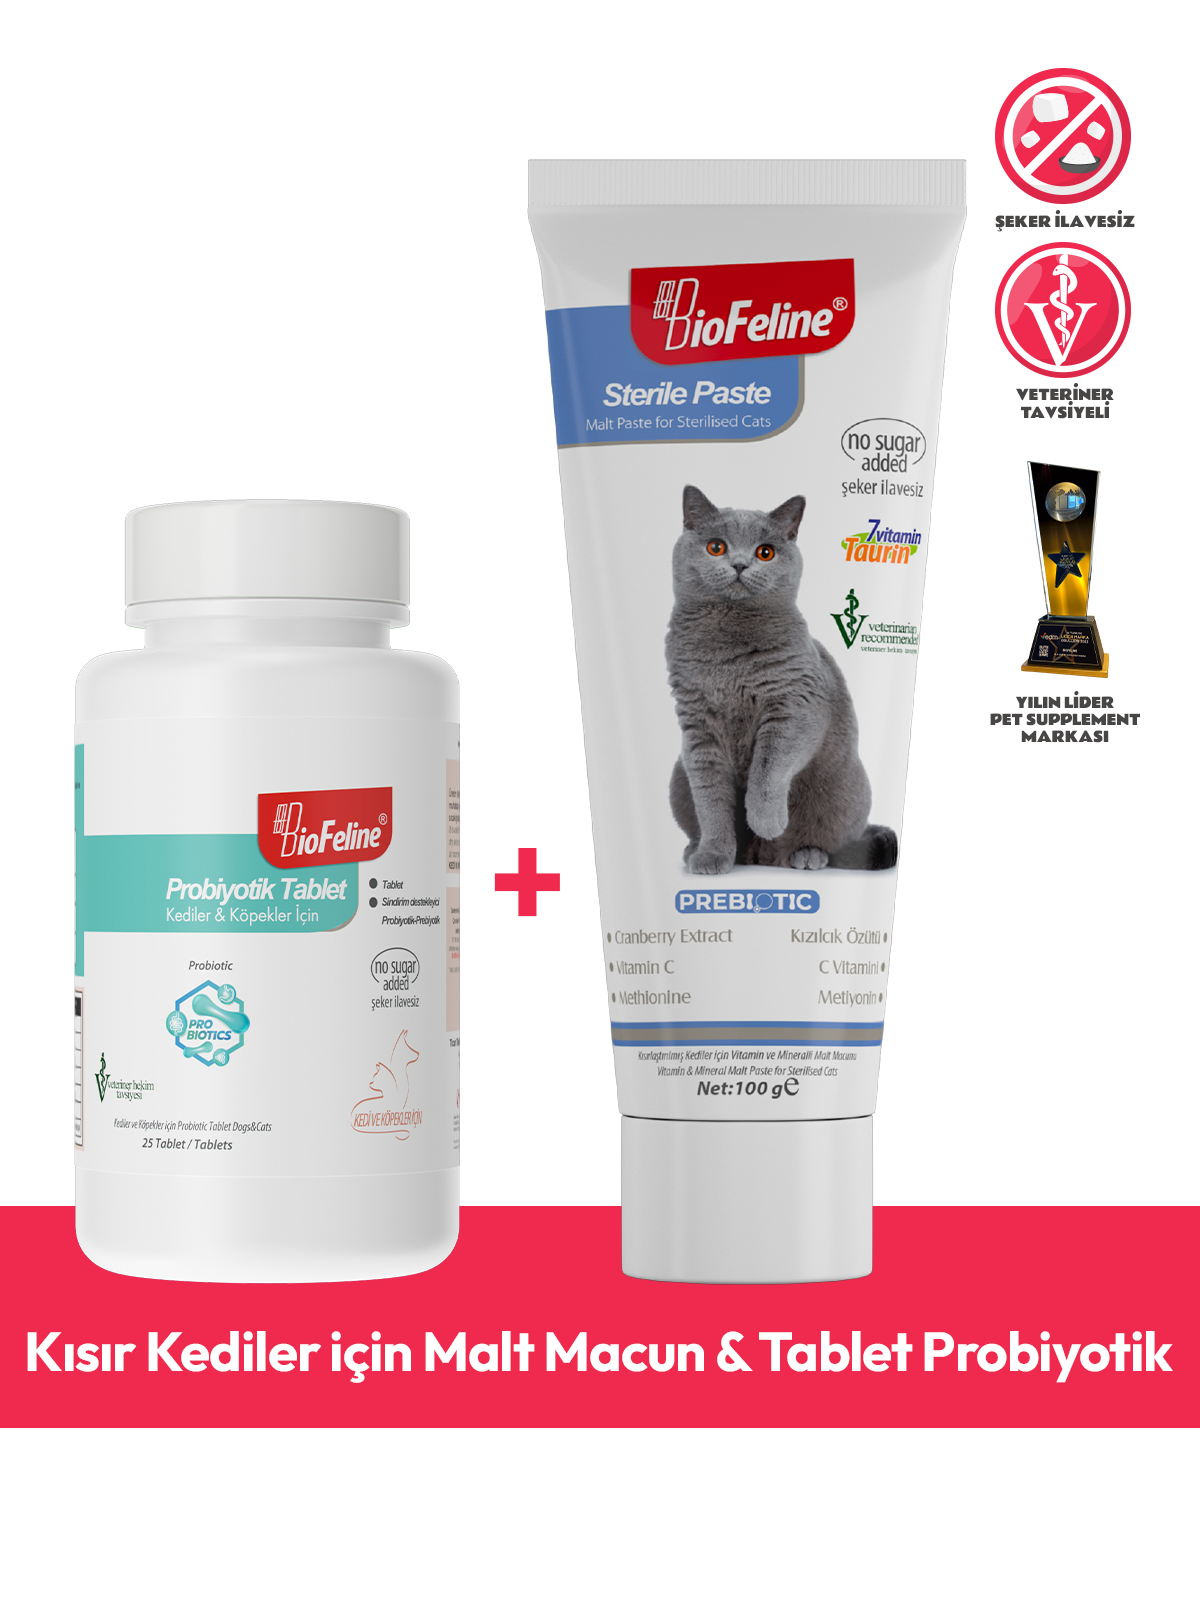 Kısır Kediler için Malt Macun & Tablet Probiyotik